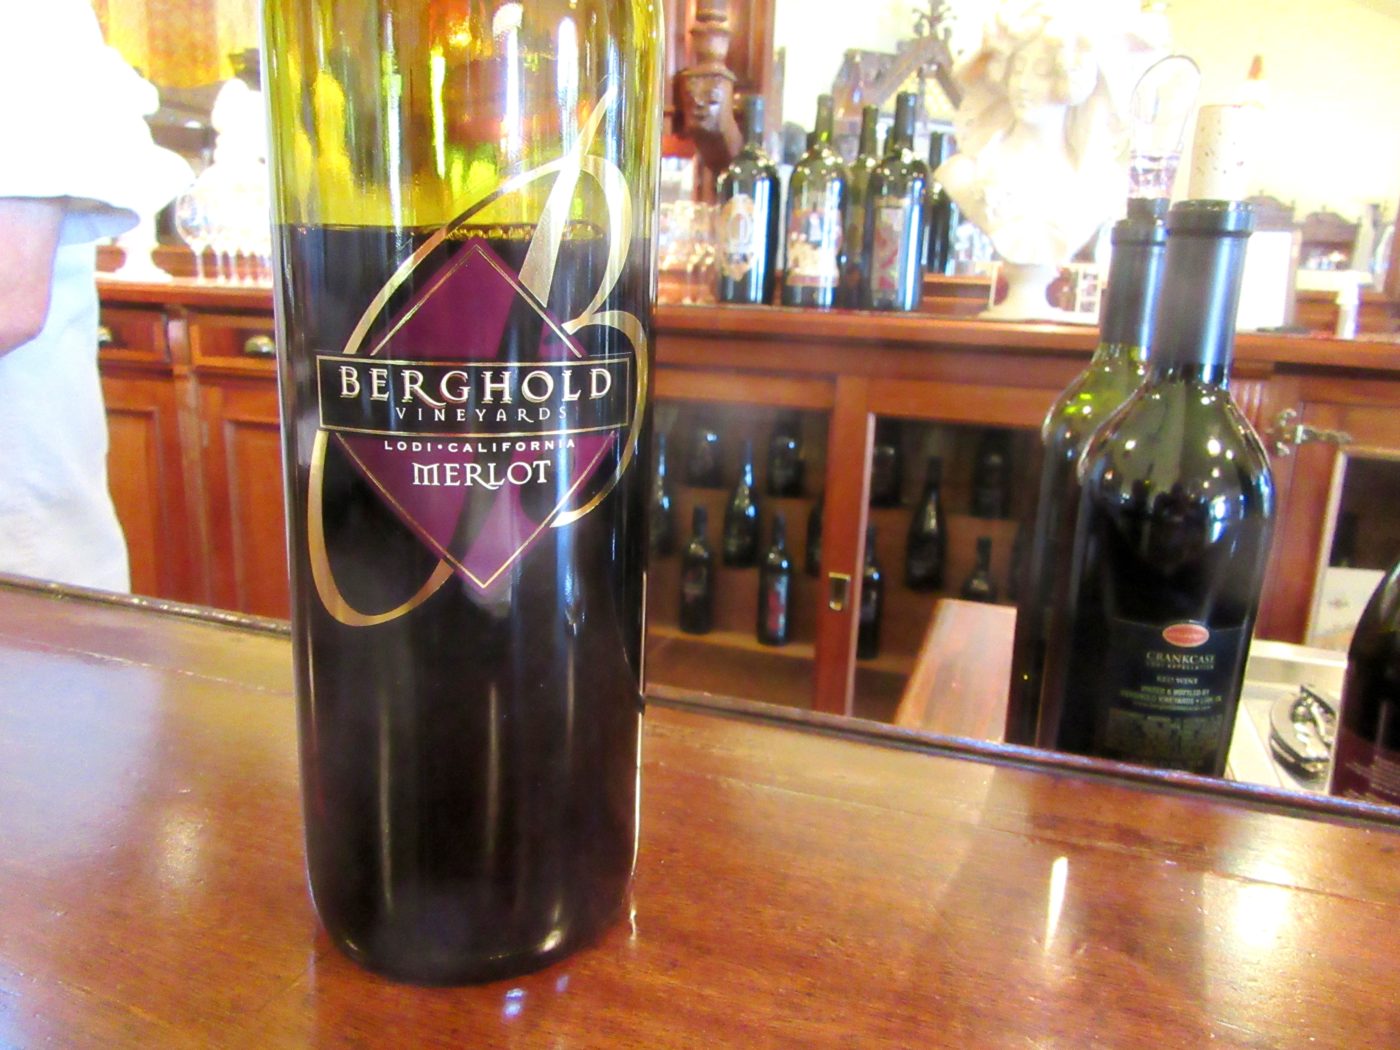 Berghold Estate Vineyards, Merlot 2008, Lodi, California, Wine Casual